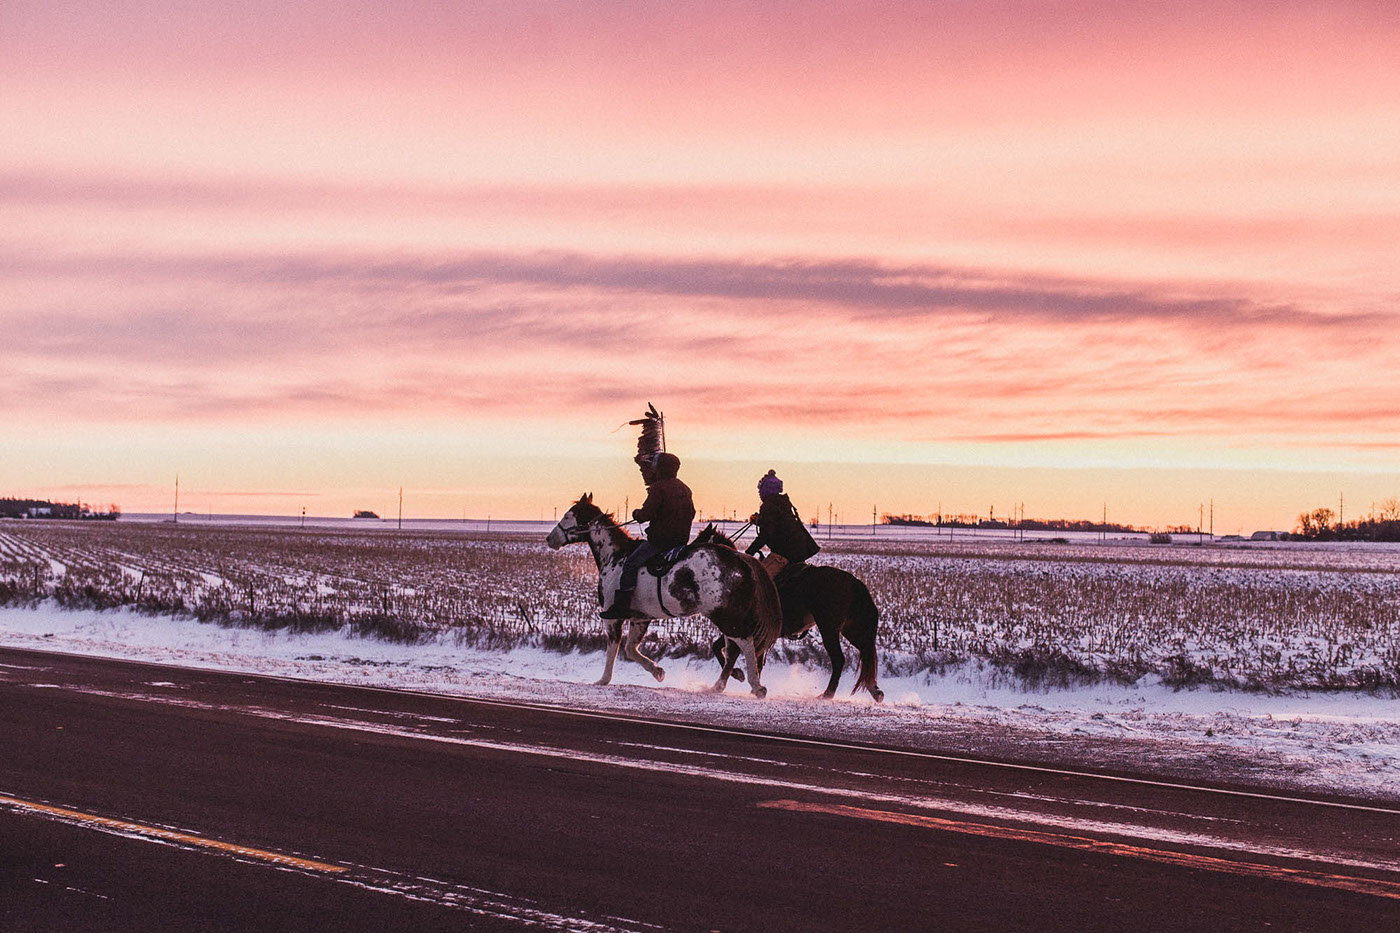 dakota 38 indigenous economist native american usa tribes 1843 magazine horse Horseback ride